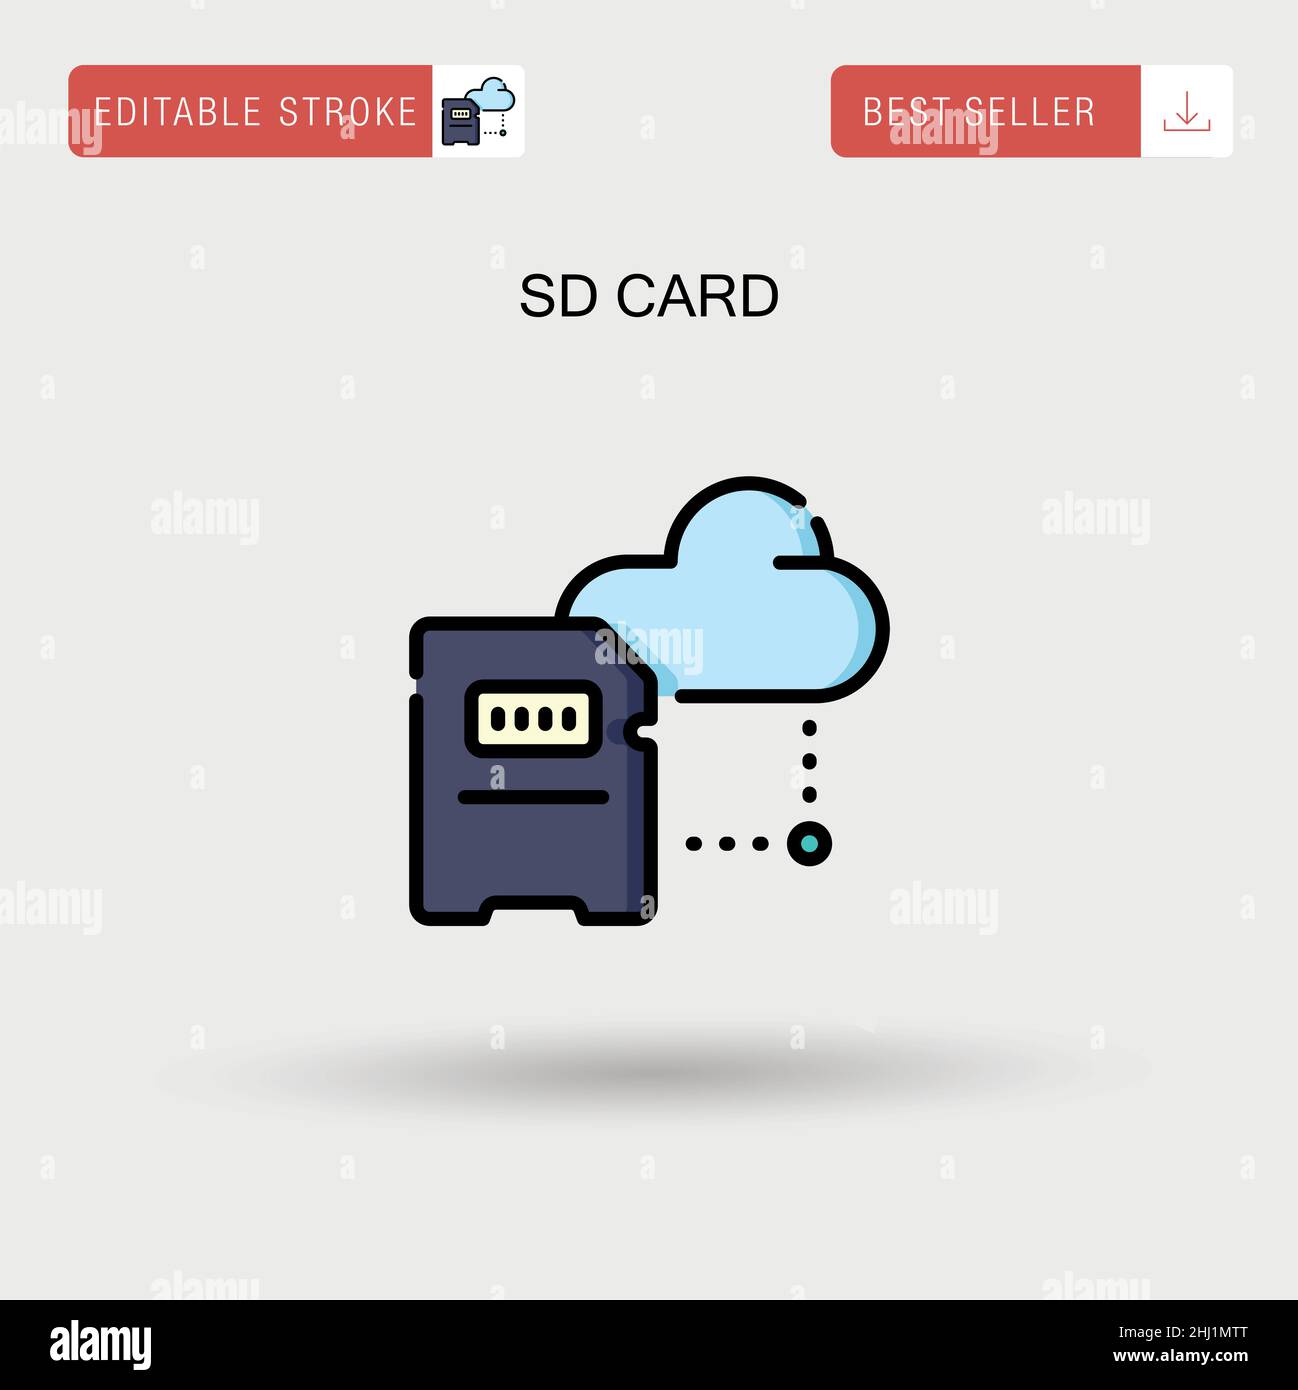 Sd card Simple vector icon. Stock Vector